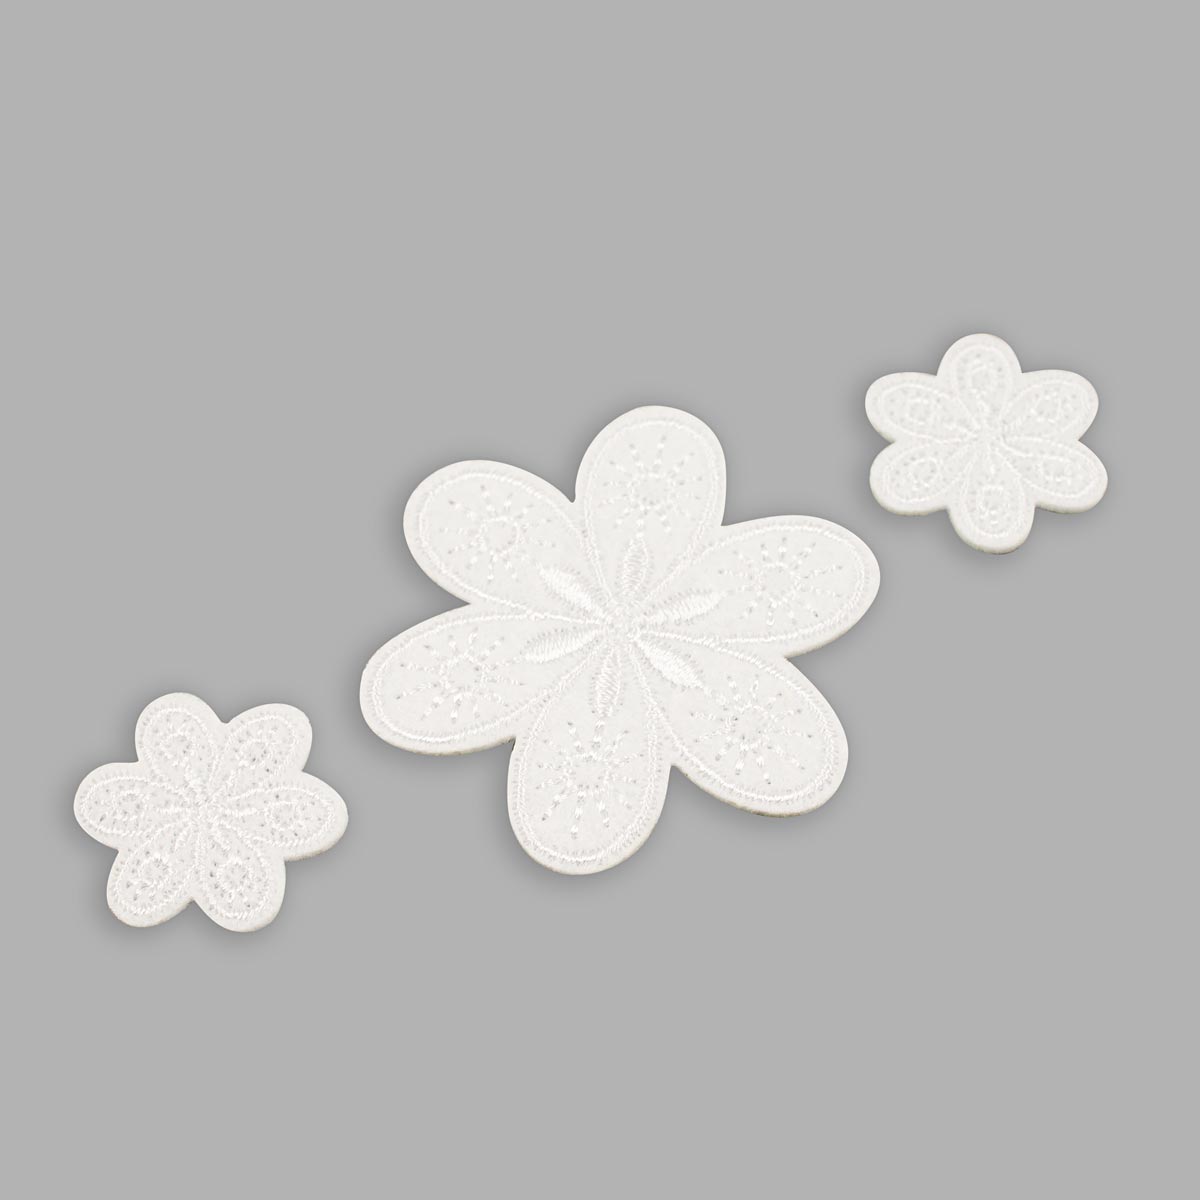 Термоаппликация Prym нашивка Цветы белые 3 шт для ремонта и украшения одежды 926729 - фото 8